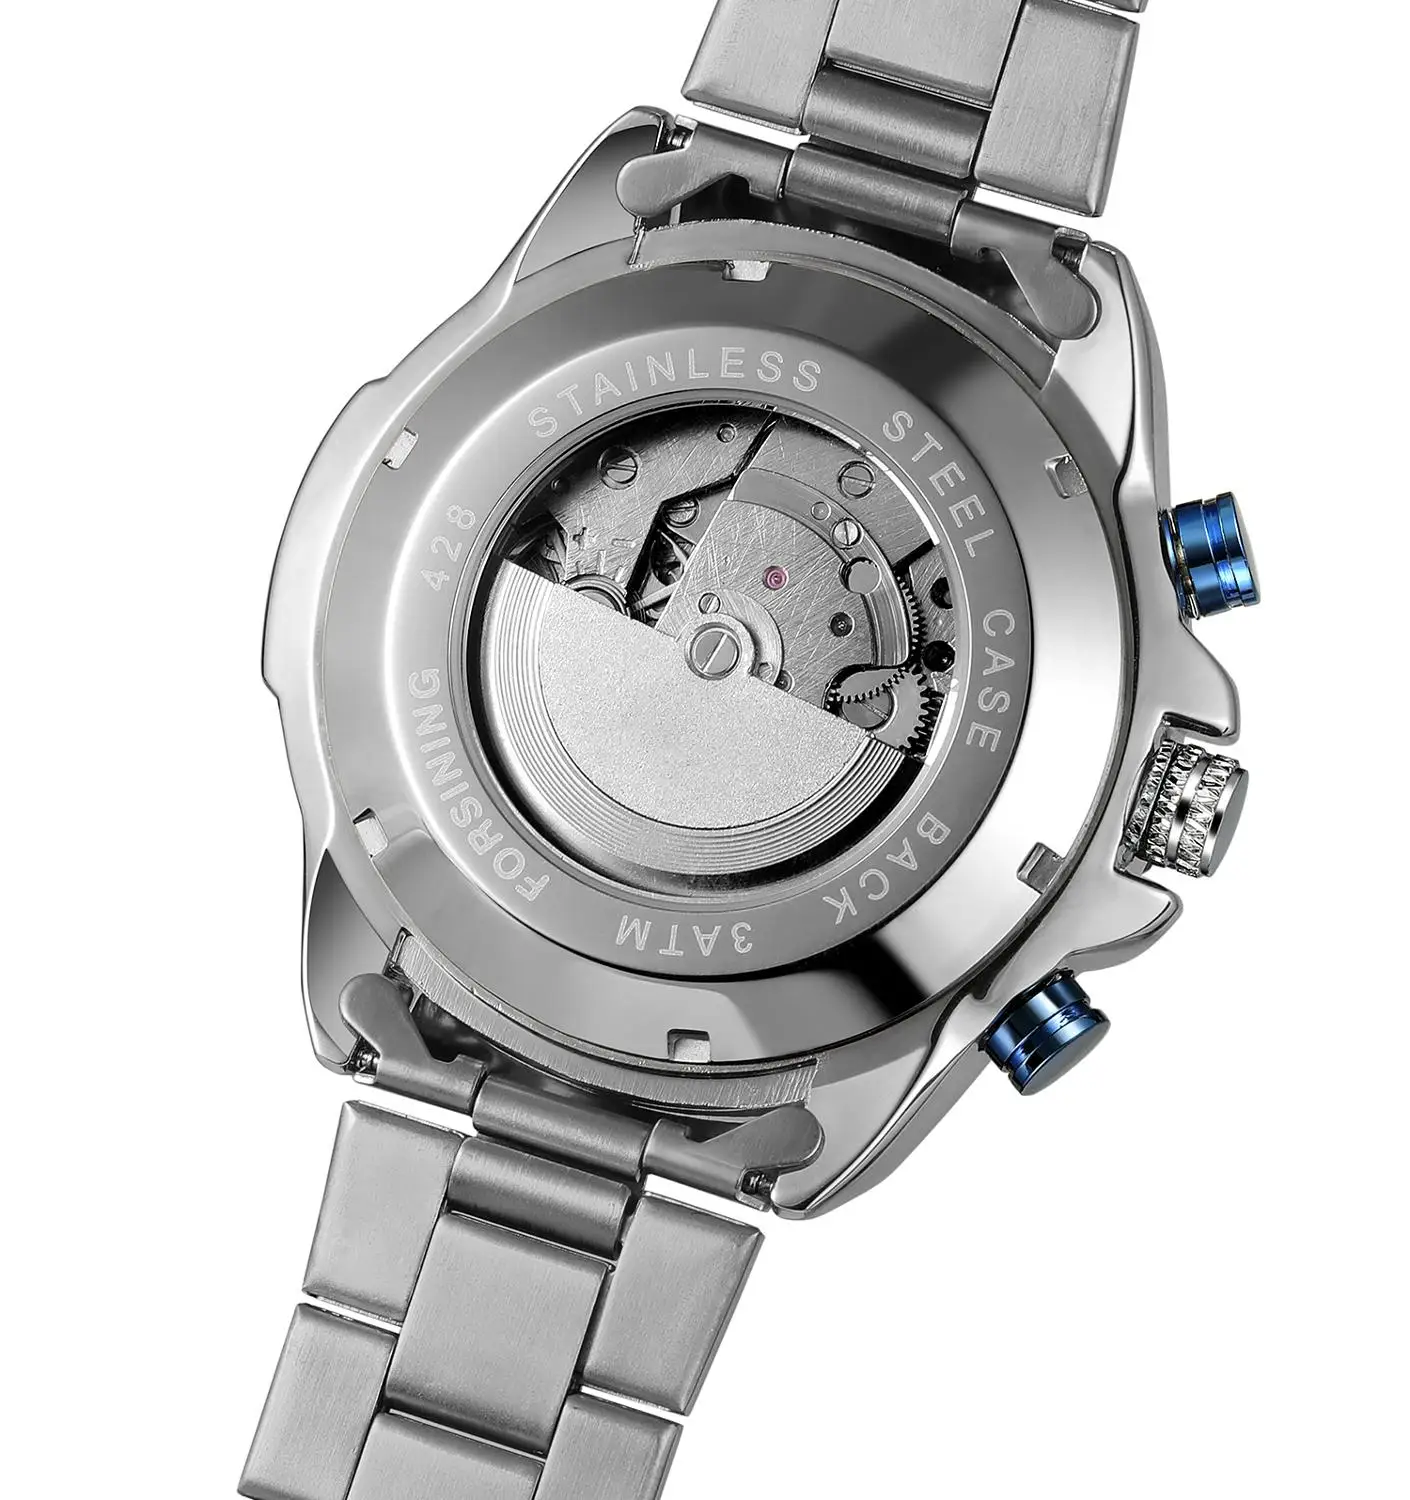 Forsining синий океан дизайн серебро сталь 3 циферблата календарь дисплей Мужские автоматические механические Спортивные наручные часы лучший бренд класса люкс